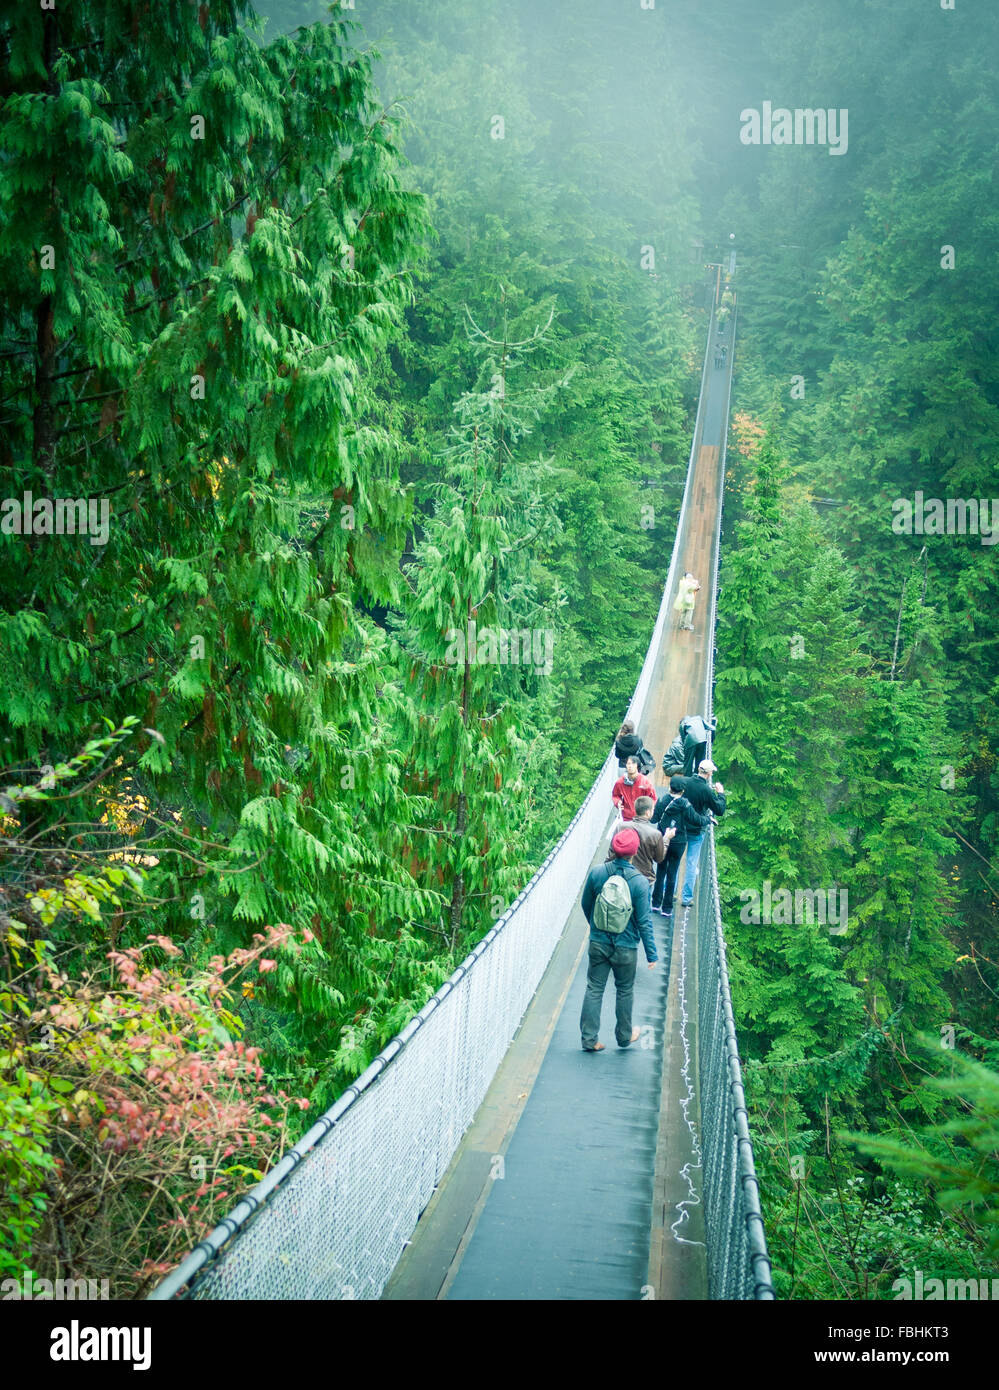 The Capilano Suspension Bridge, a popular tourist attraction at Capilano Suspension Bridge Park in North Vancouver, Canada. Stock Photo